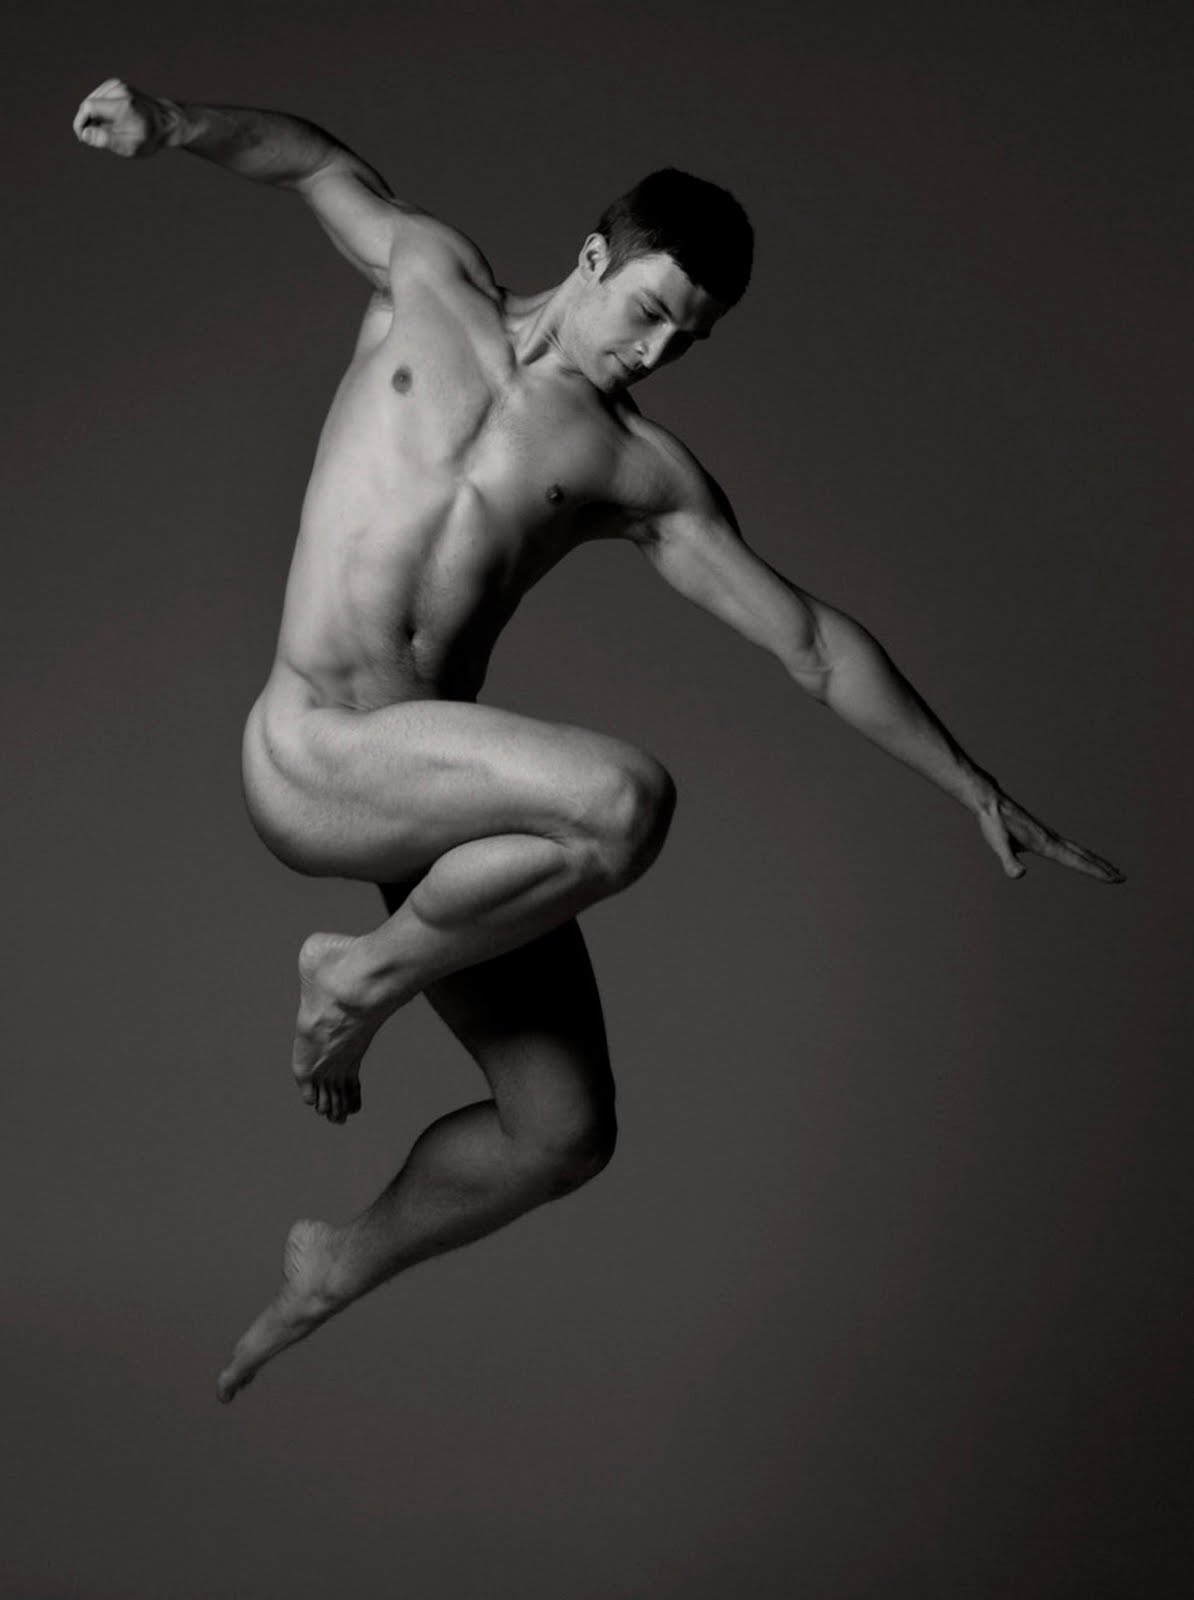 Naked male dancers - 593ceaba7ff4b.jpg.